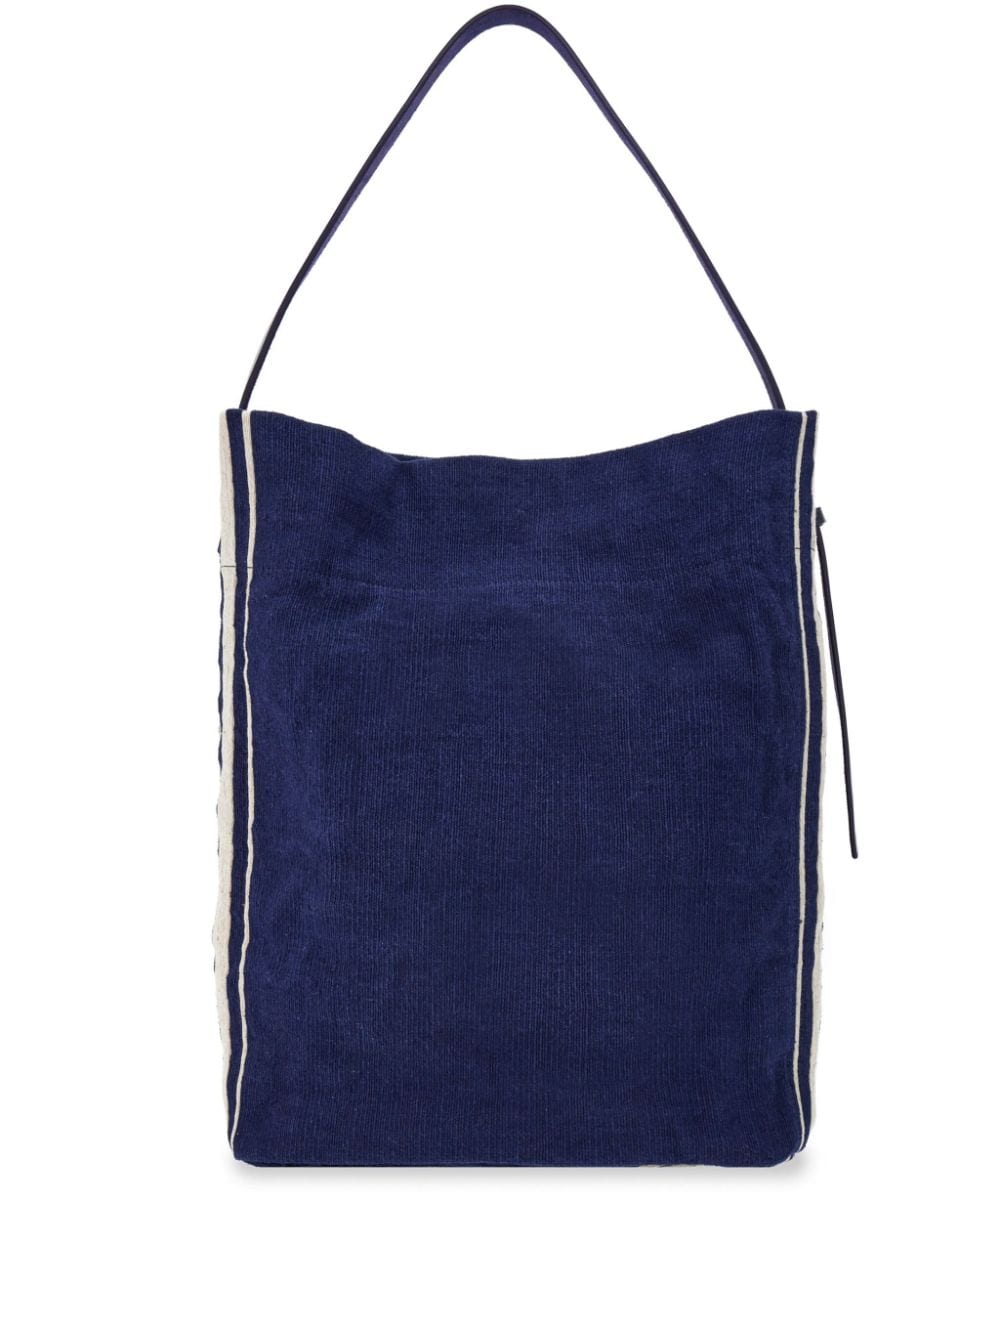 Ferragamo jacquard fabric tote bag - Blue von Ferragamo